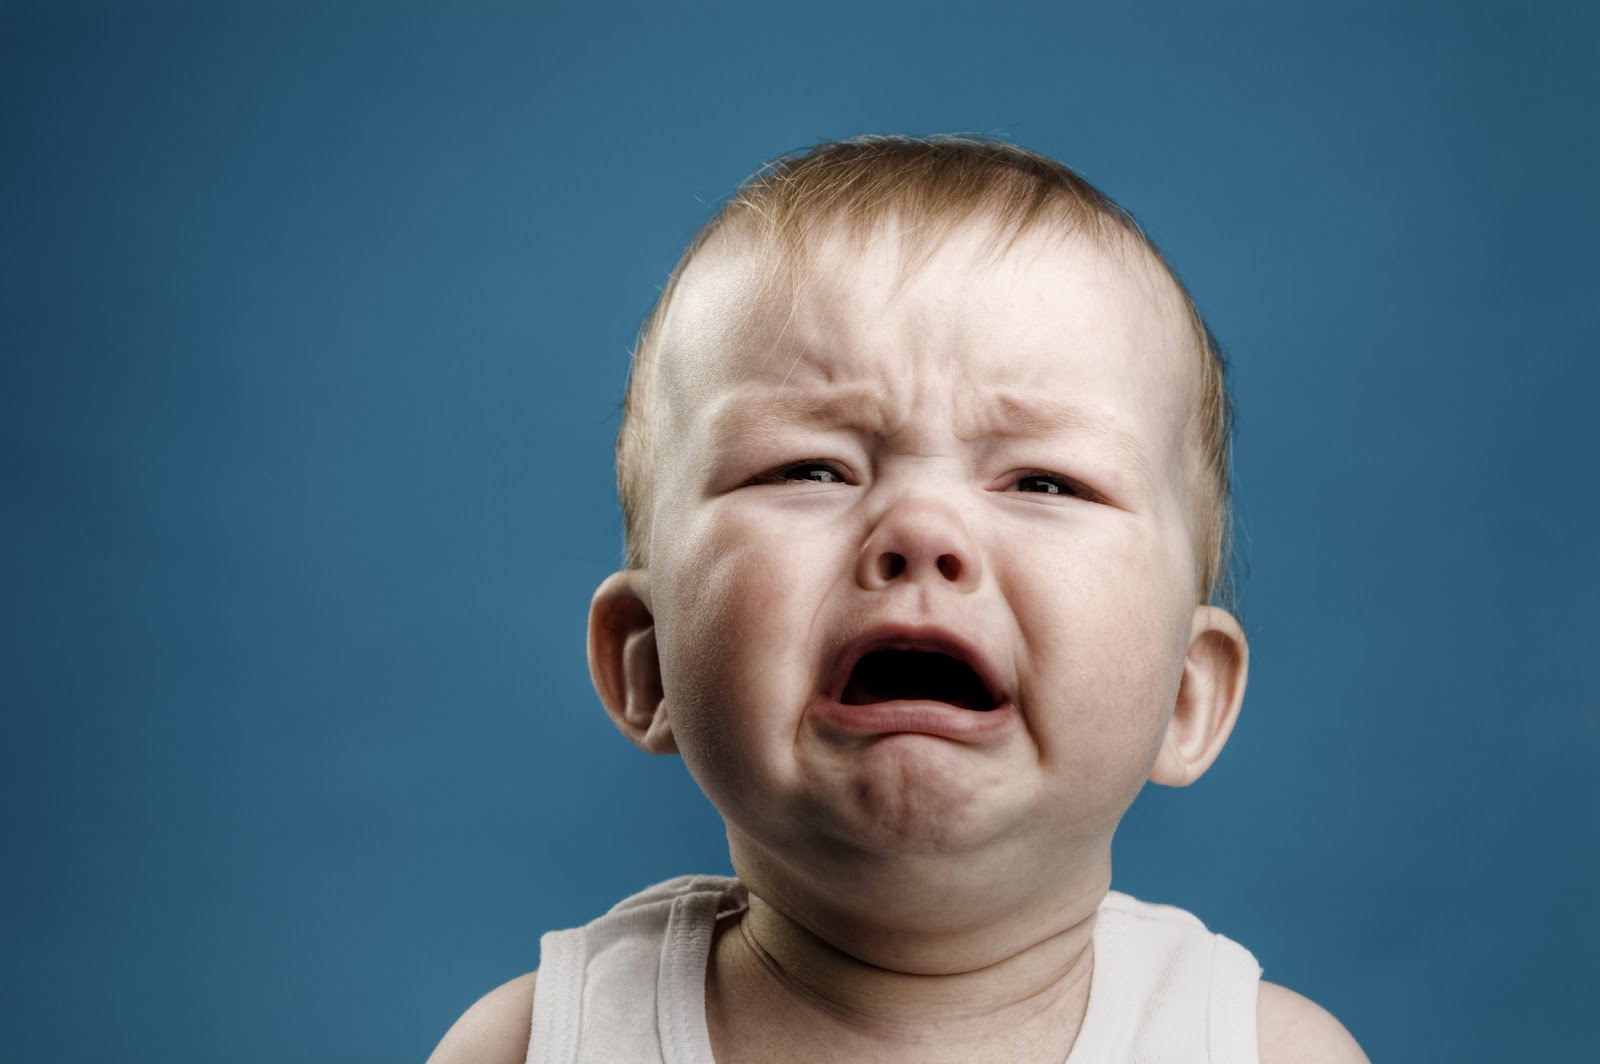 De ce plânge bebelușul? TOP 10 cauze principale